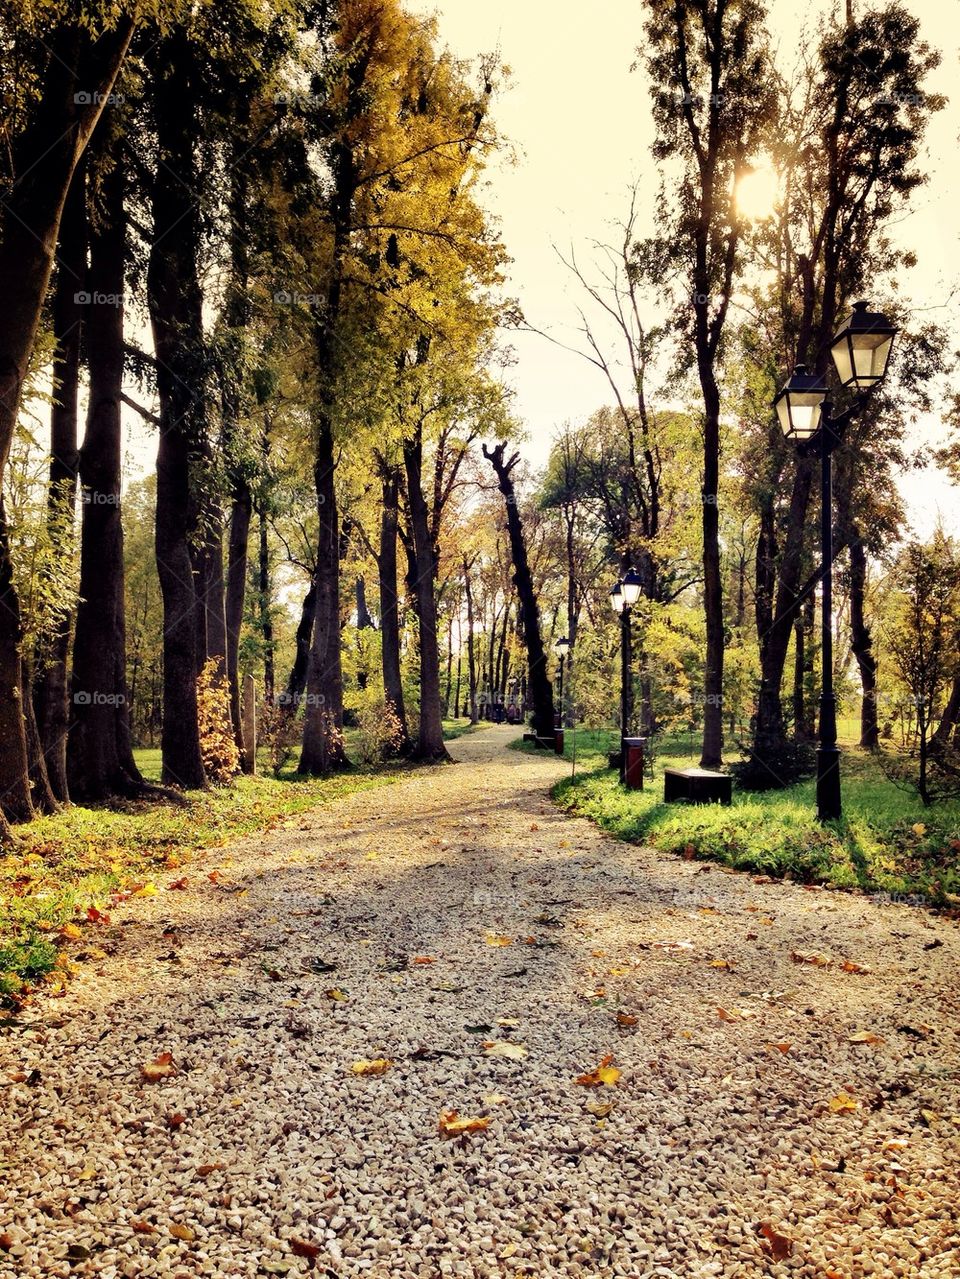 Autumn in Romania.